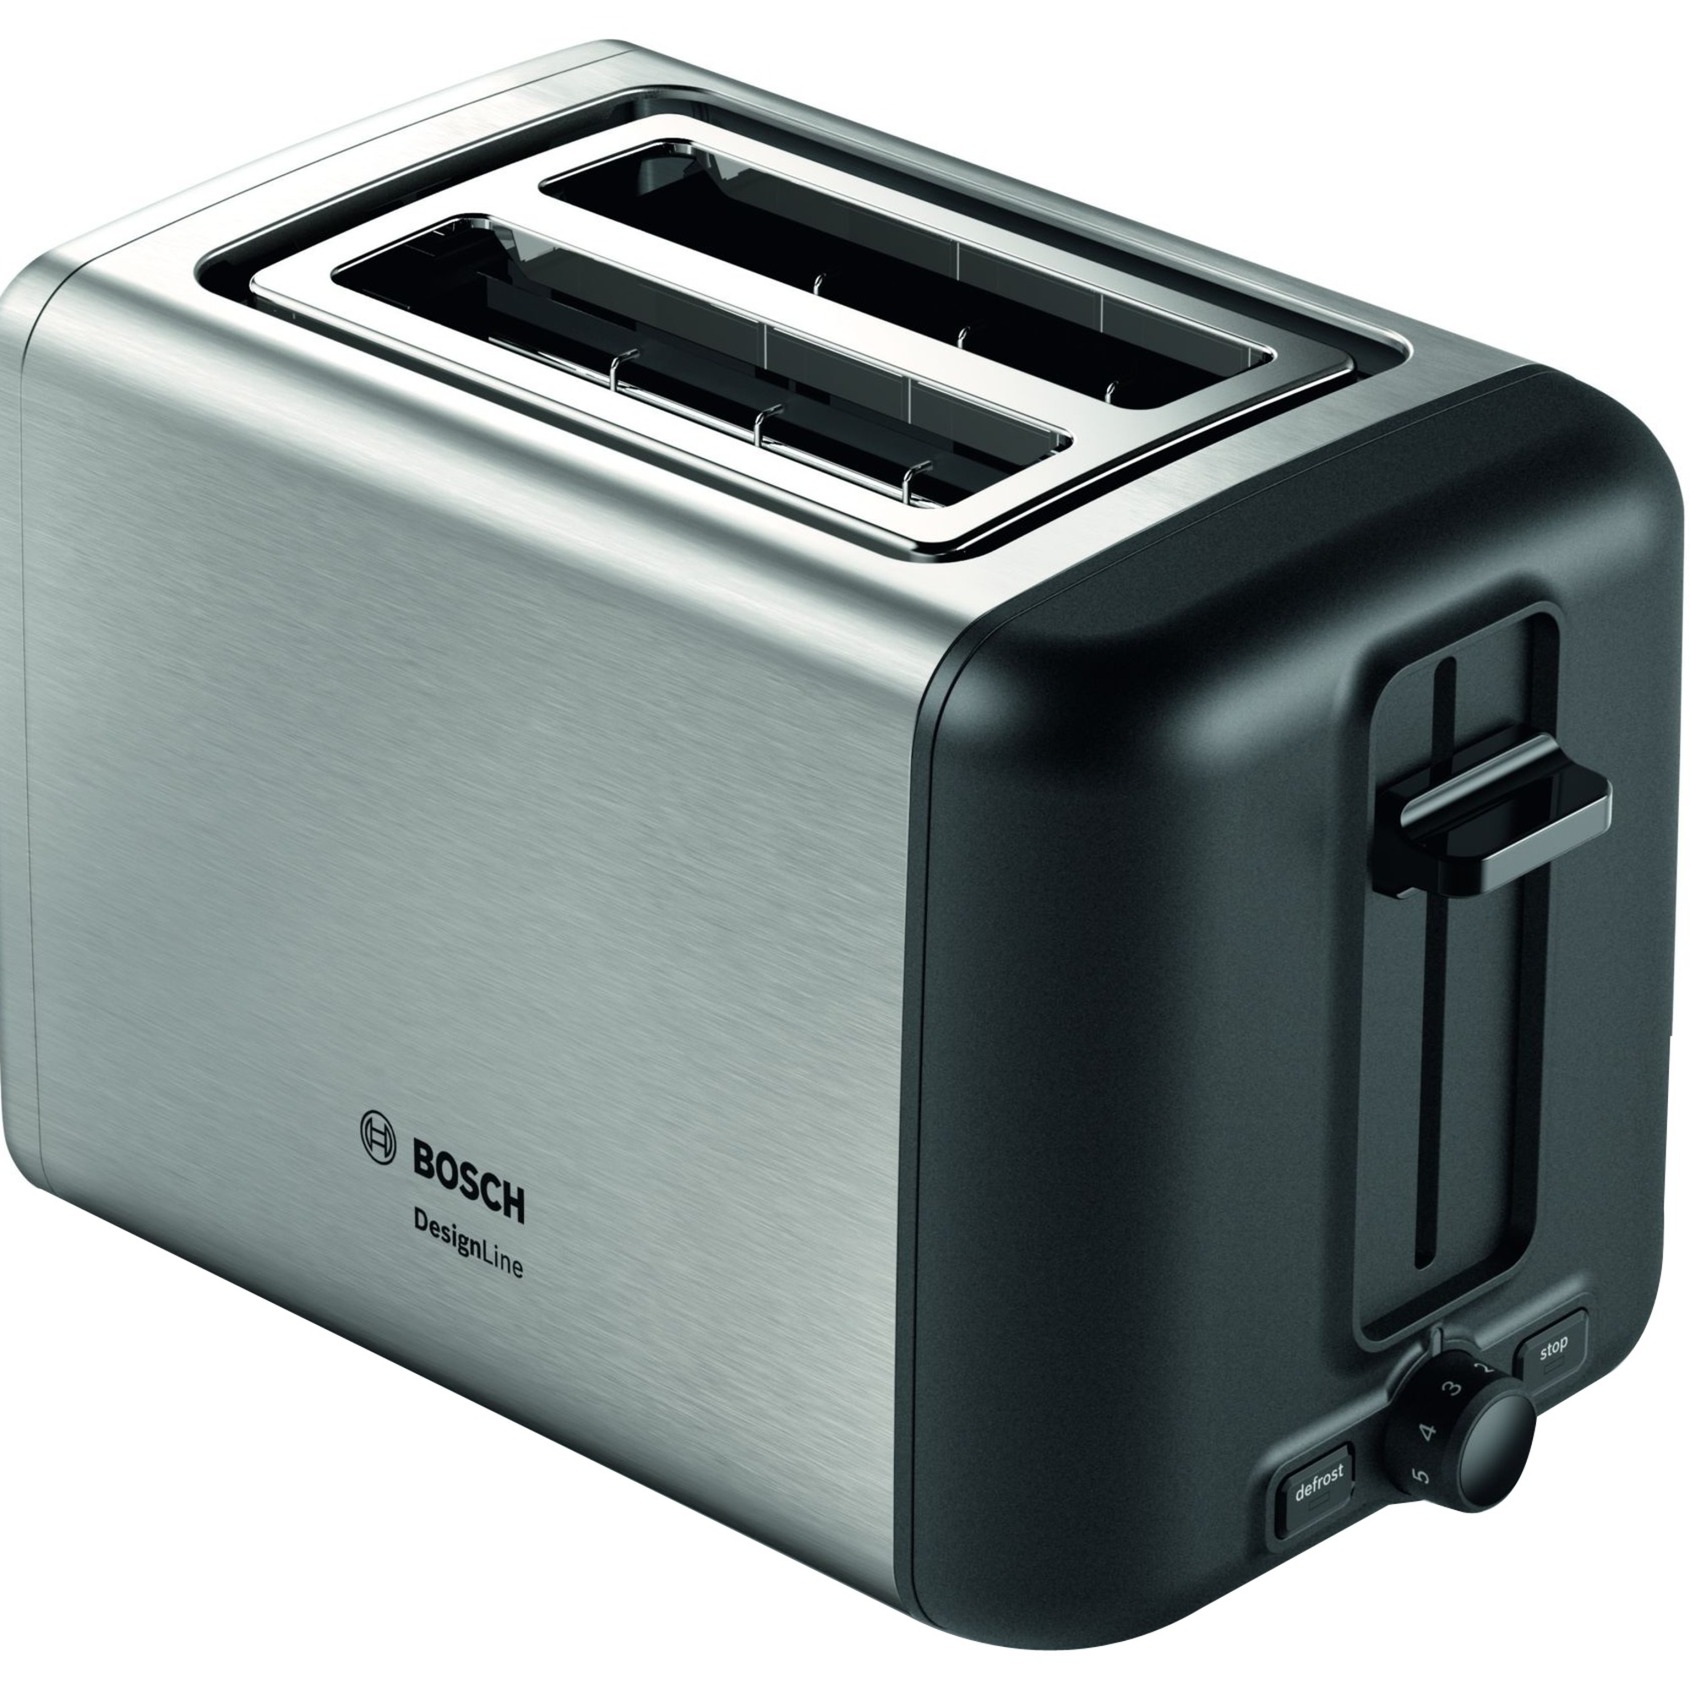 Image of Alternate - Kompakt-Toaster DesignLine TAT3P420DE online einkaufen bei Alternate